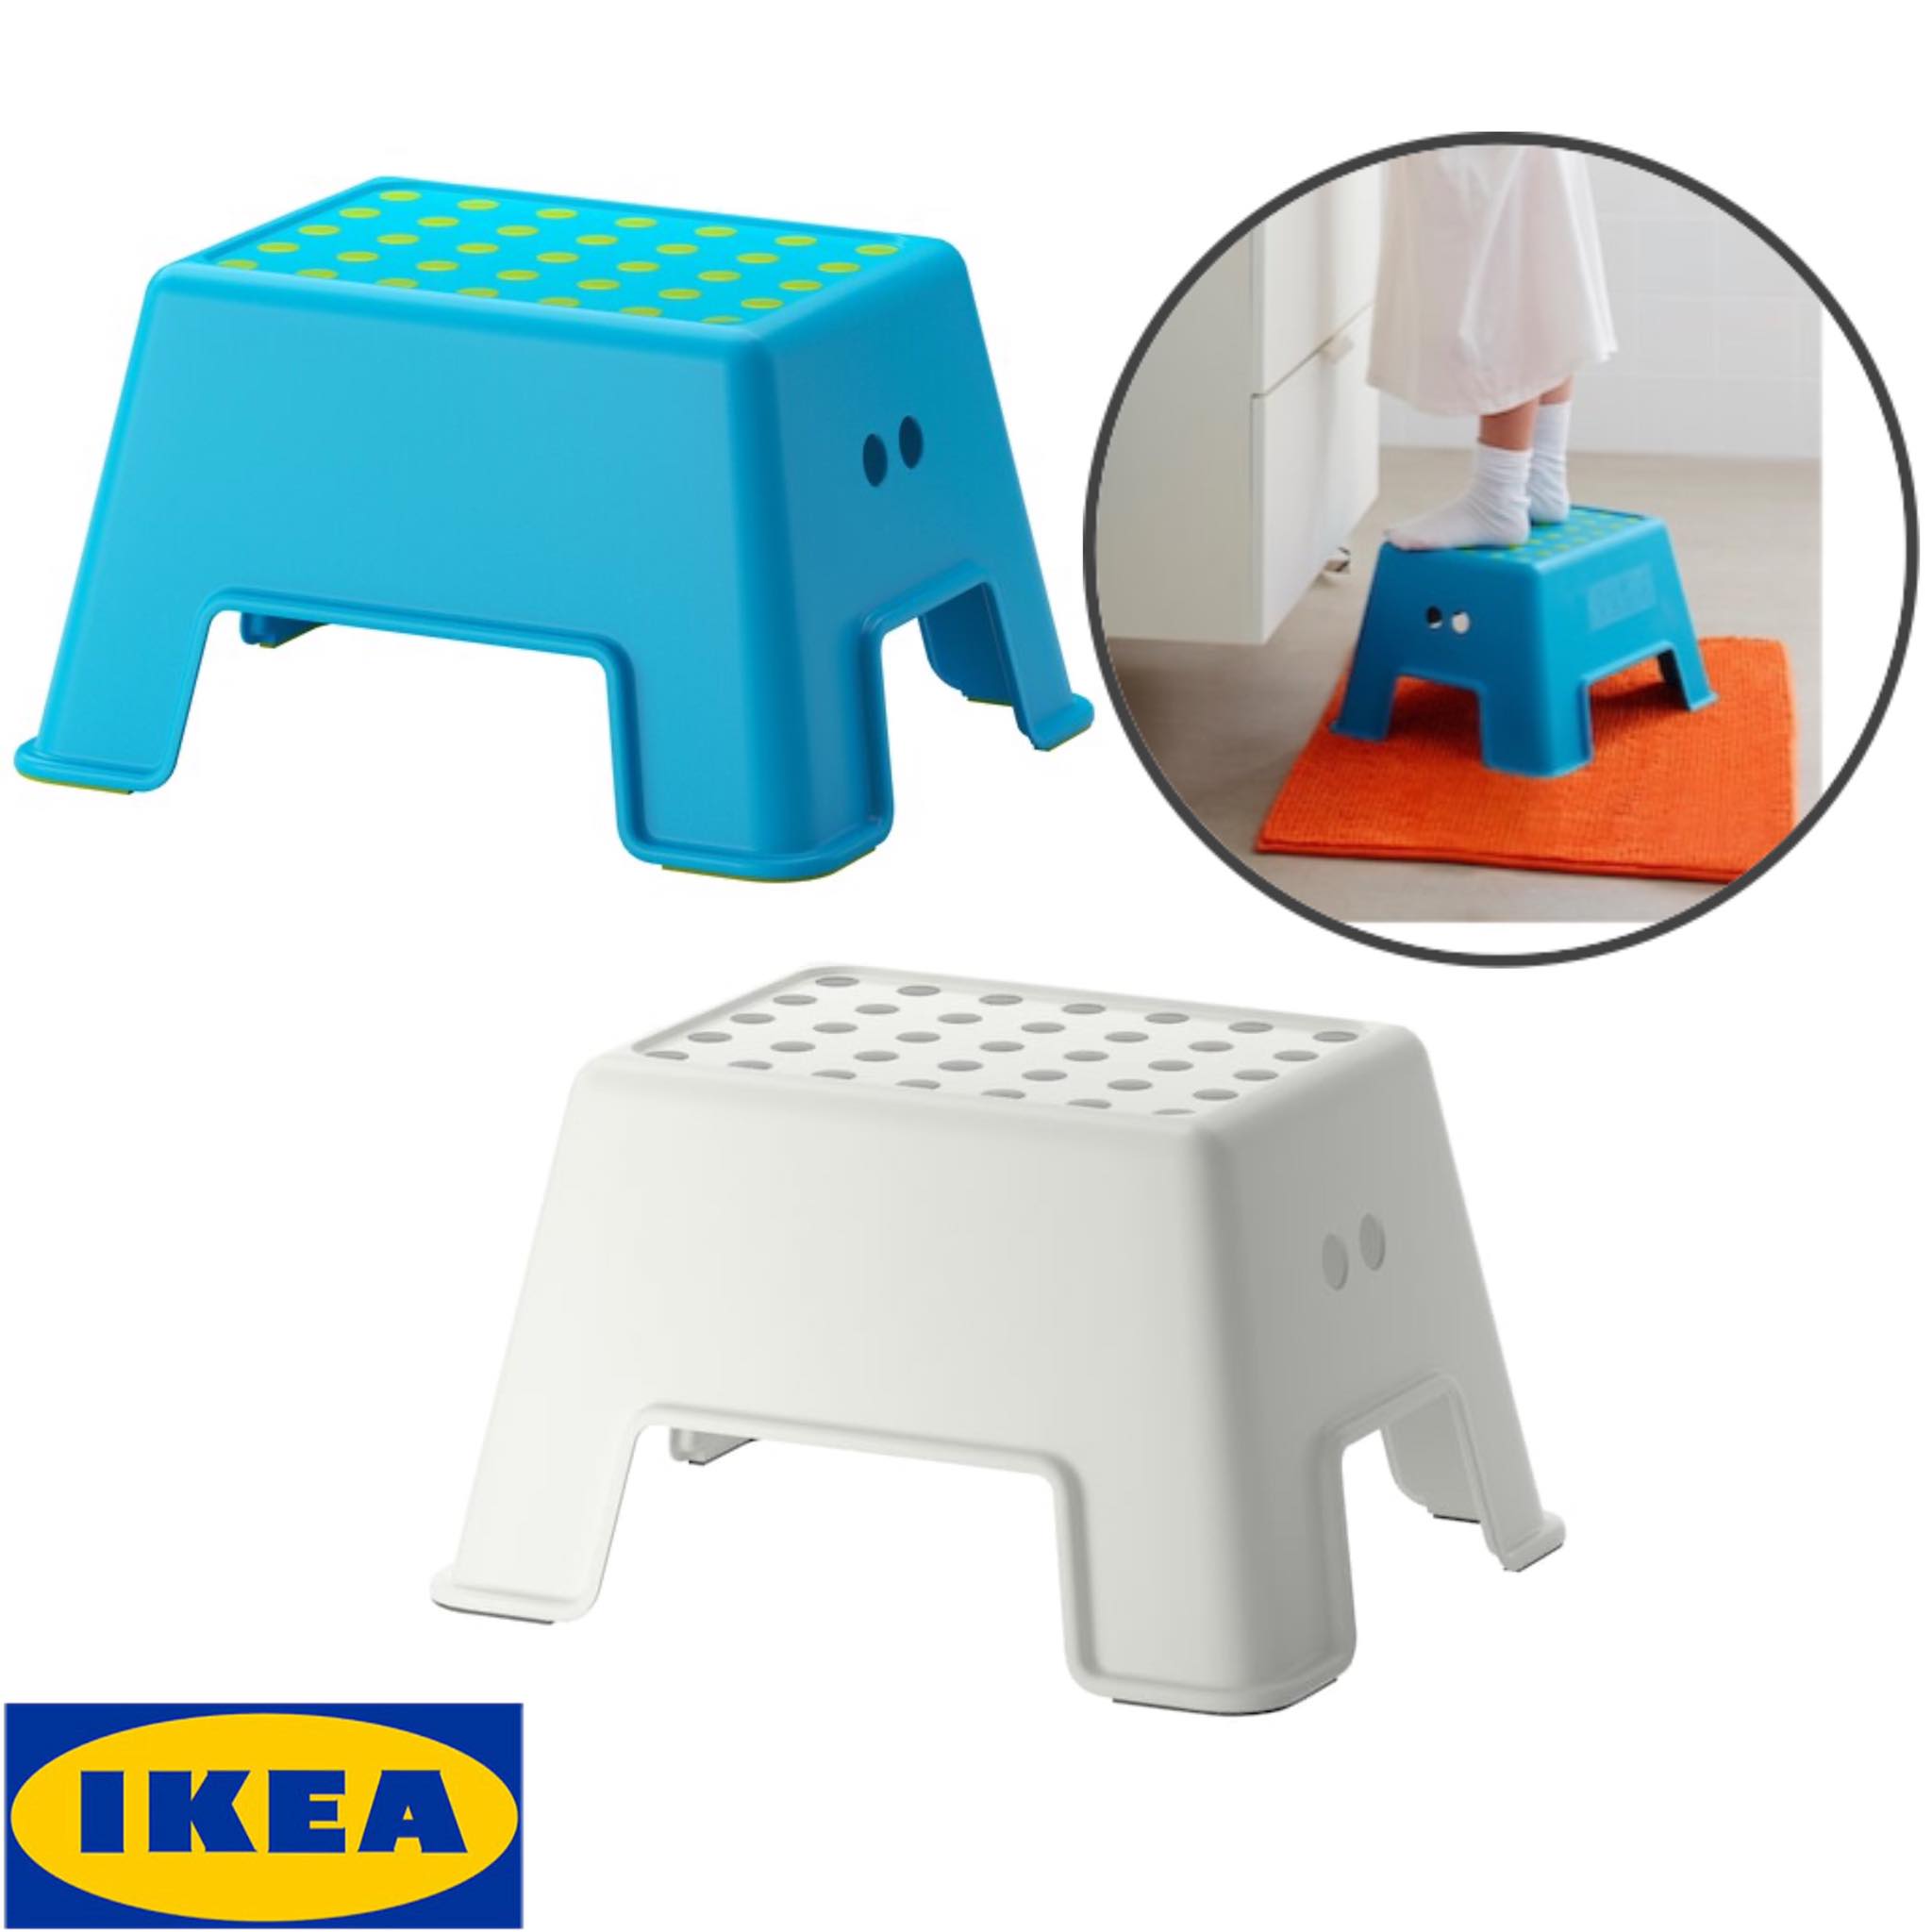 IKEA เฟอร์ชิกติก สตูลเด็ก, ขาว,น้ำเงิน